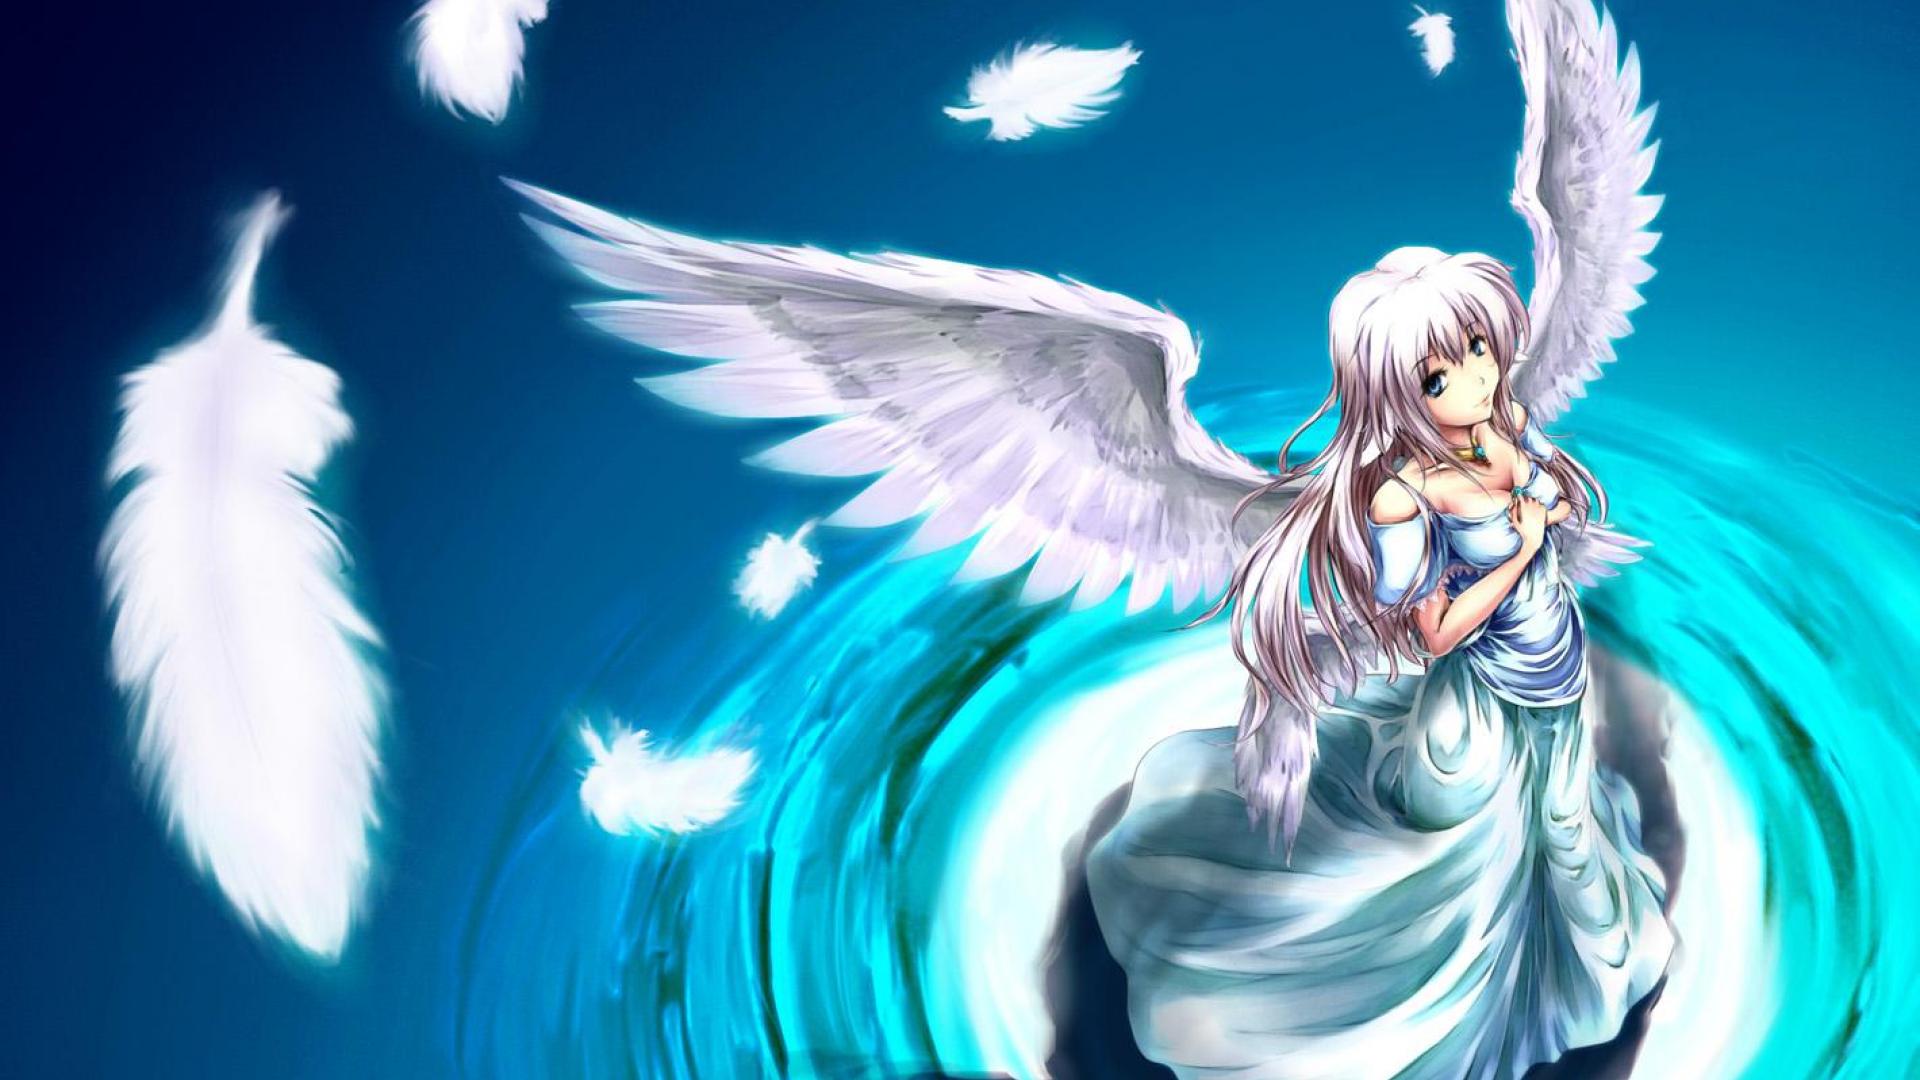 アニメの天使の壁紙,天使,cgアートワーク,超自然的な生き物,架空の人物,アニメ